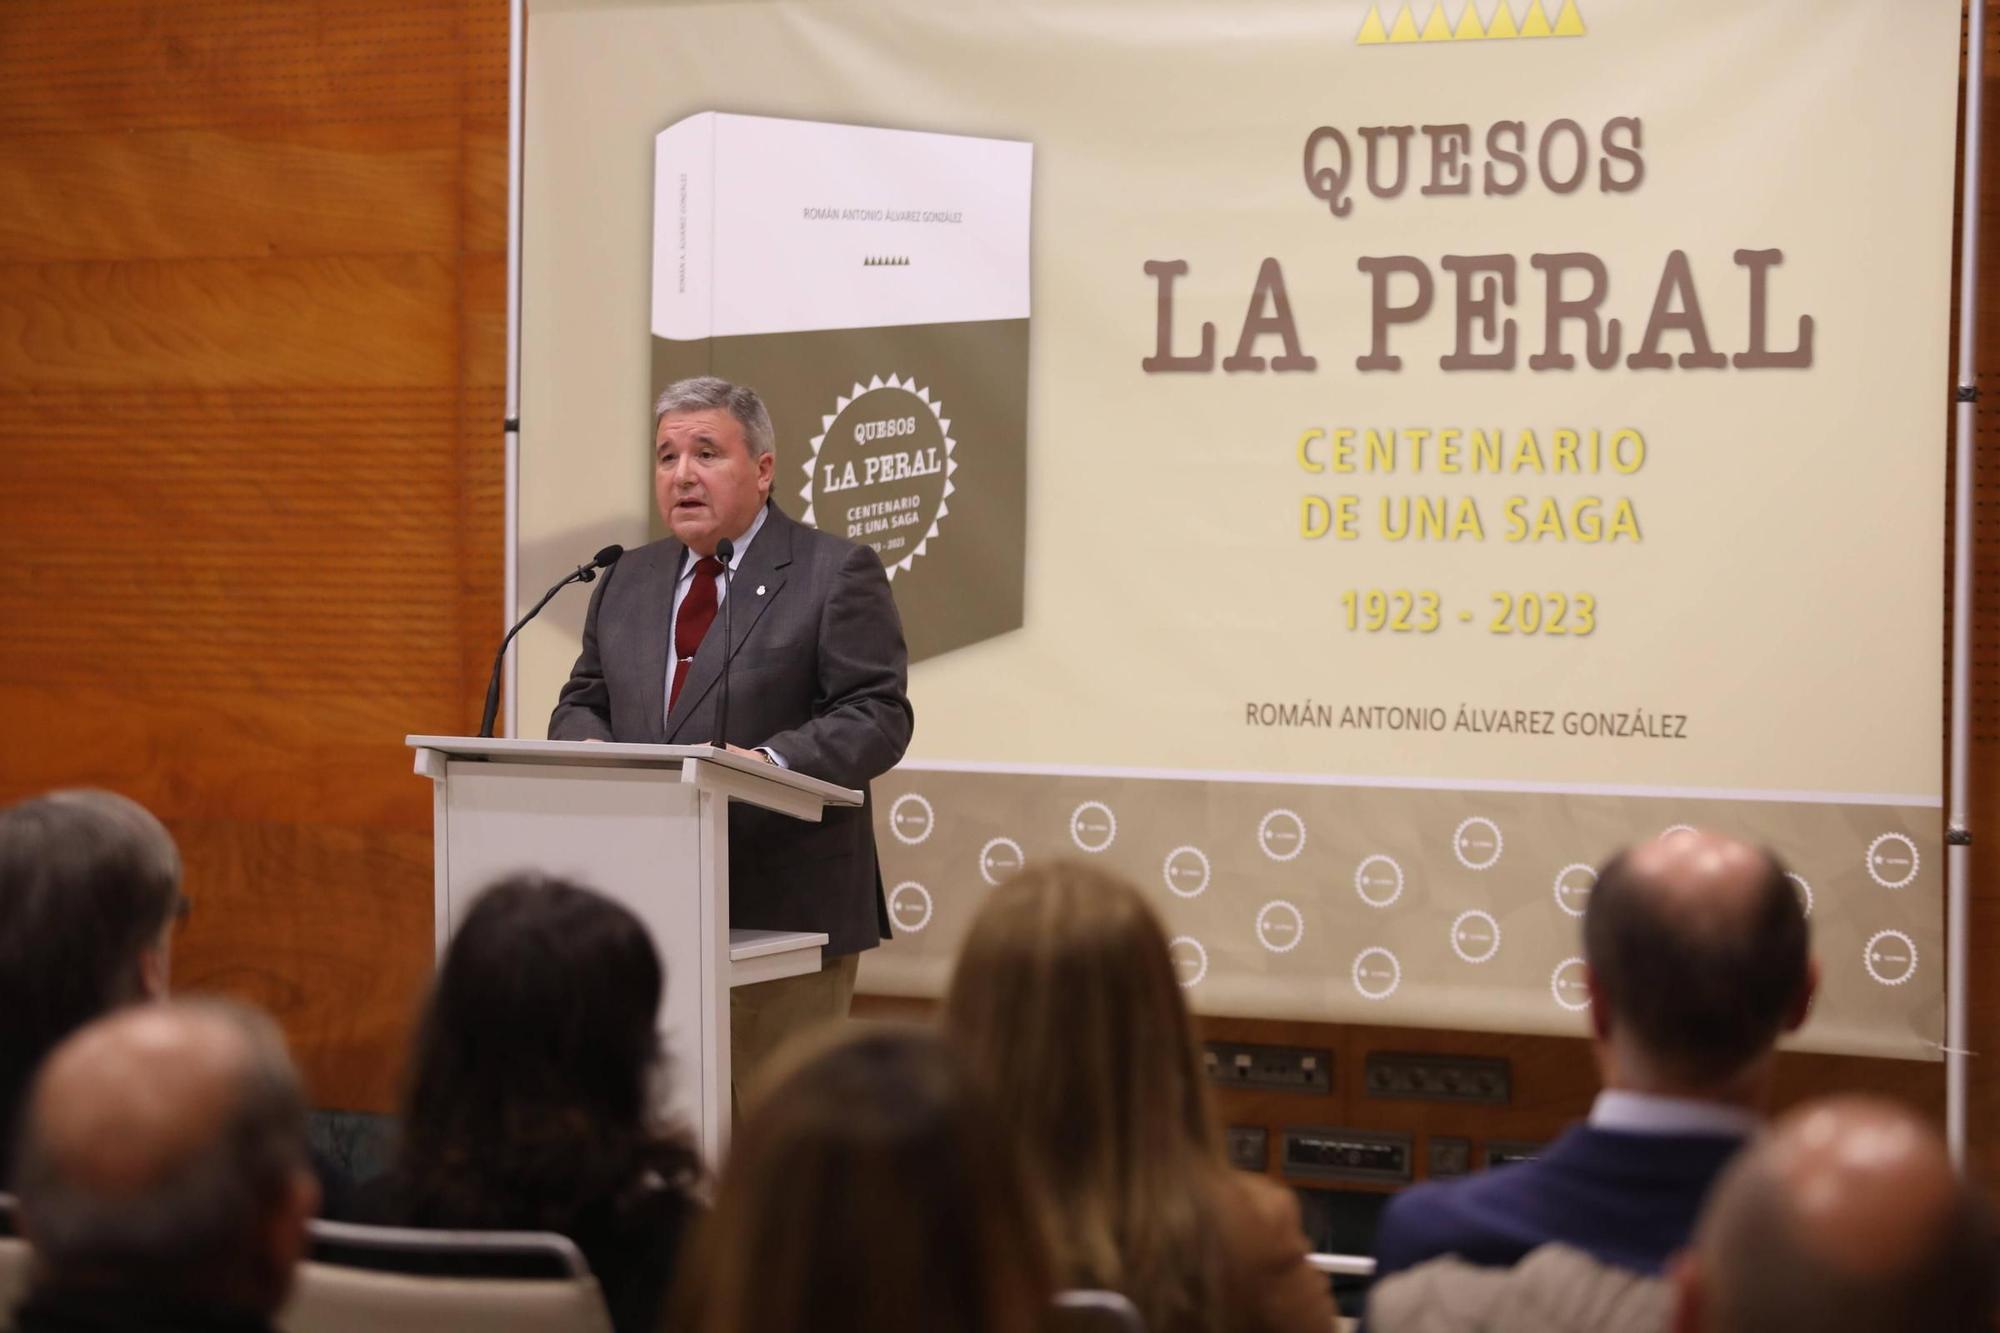 EN IMÁGENES: Así fue la presentación del libro "Quesos La Peral. Centenario de una saga: 1923-2023"